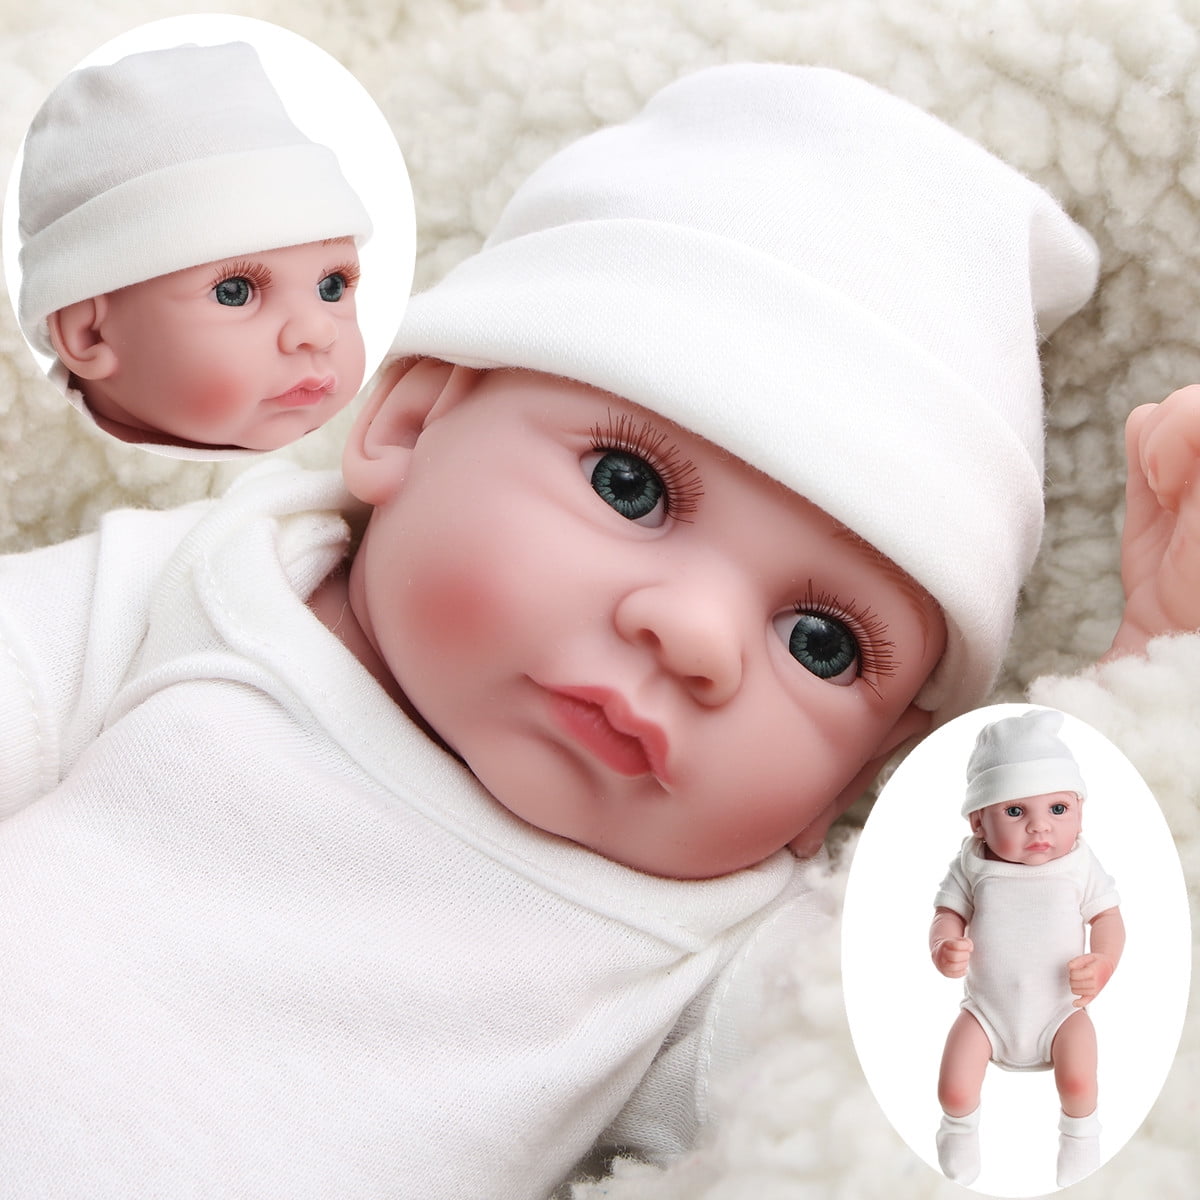 10" Full Vinyl Reborn Baby Doll Boy Preemie Lifelike Real Looking Baby Doll Gift